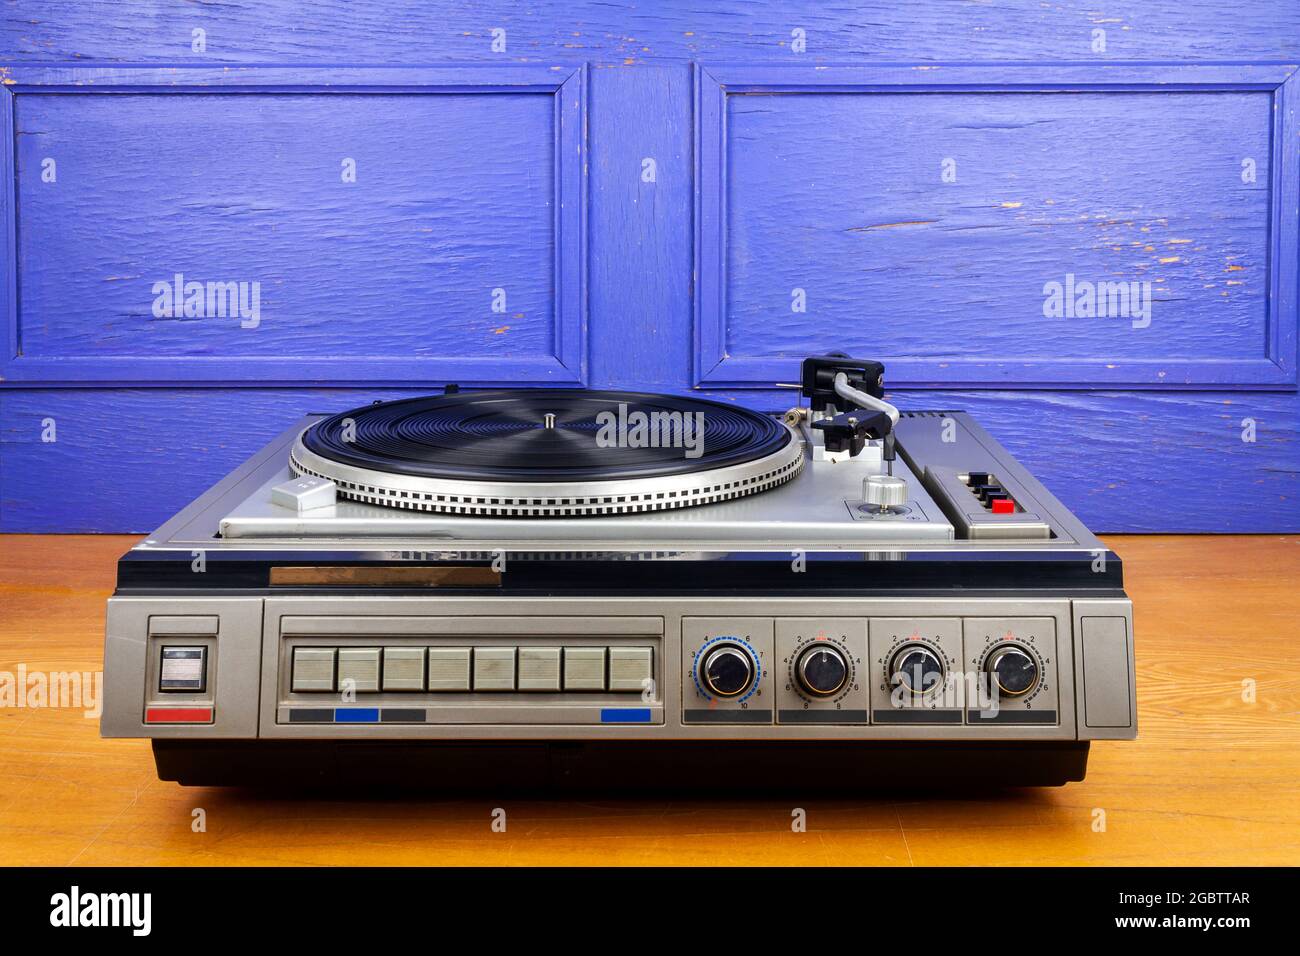 Vintage Plattenspieler Vinyl Plattenspieler auf Tisch an blauer Wand  Stockfotografie - Alamy